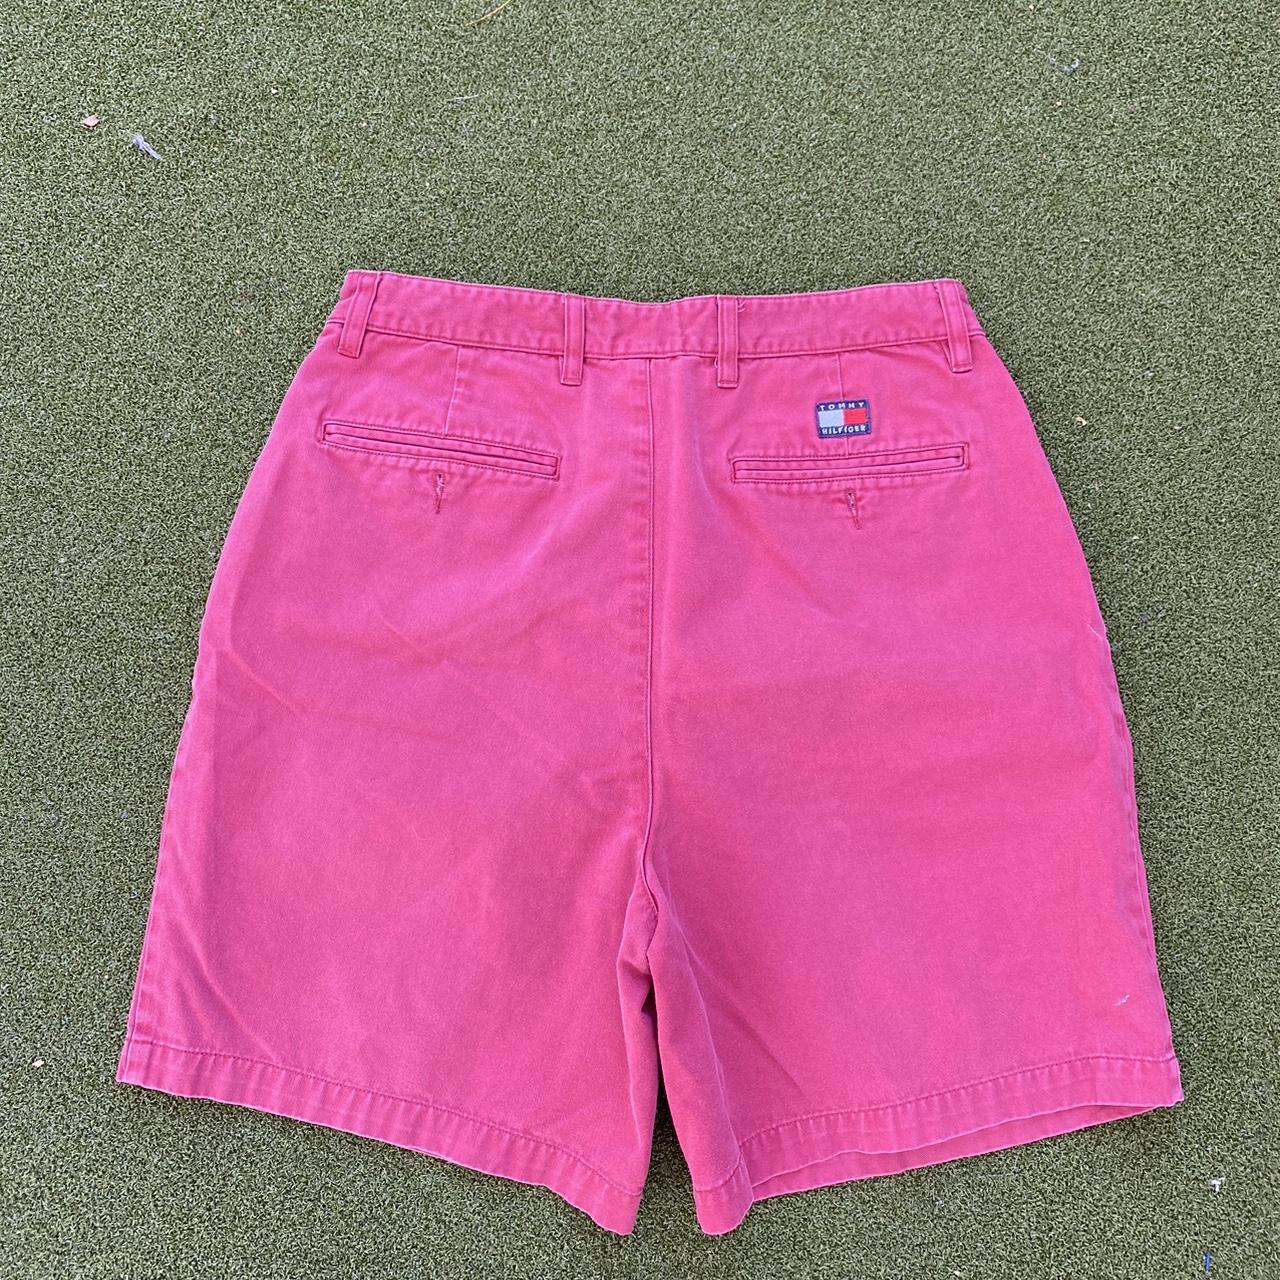 Vintage Tommy Hilfiger Shorts size 33 - Depop